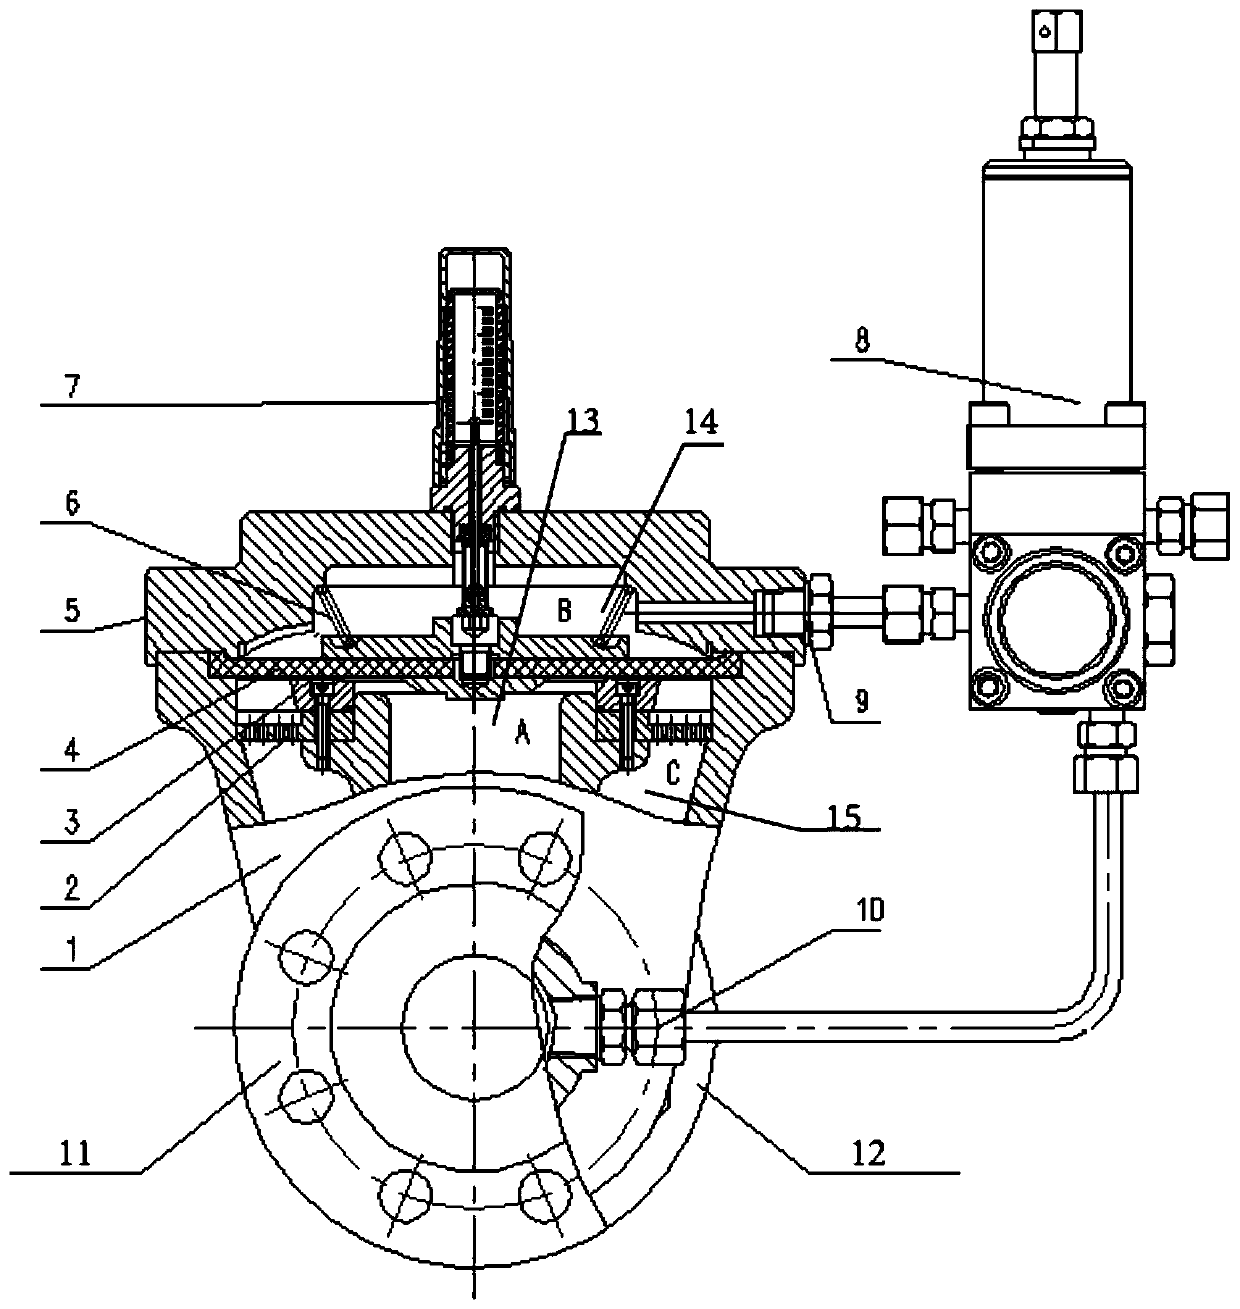 Radial flow type gas pressure regulator